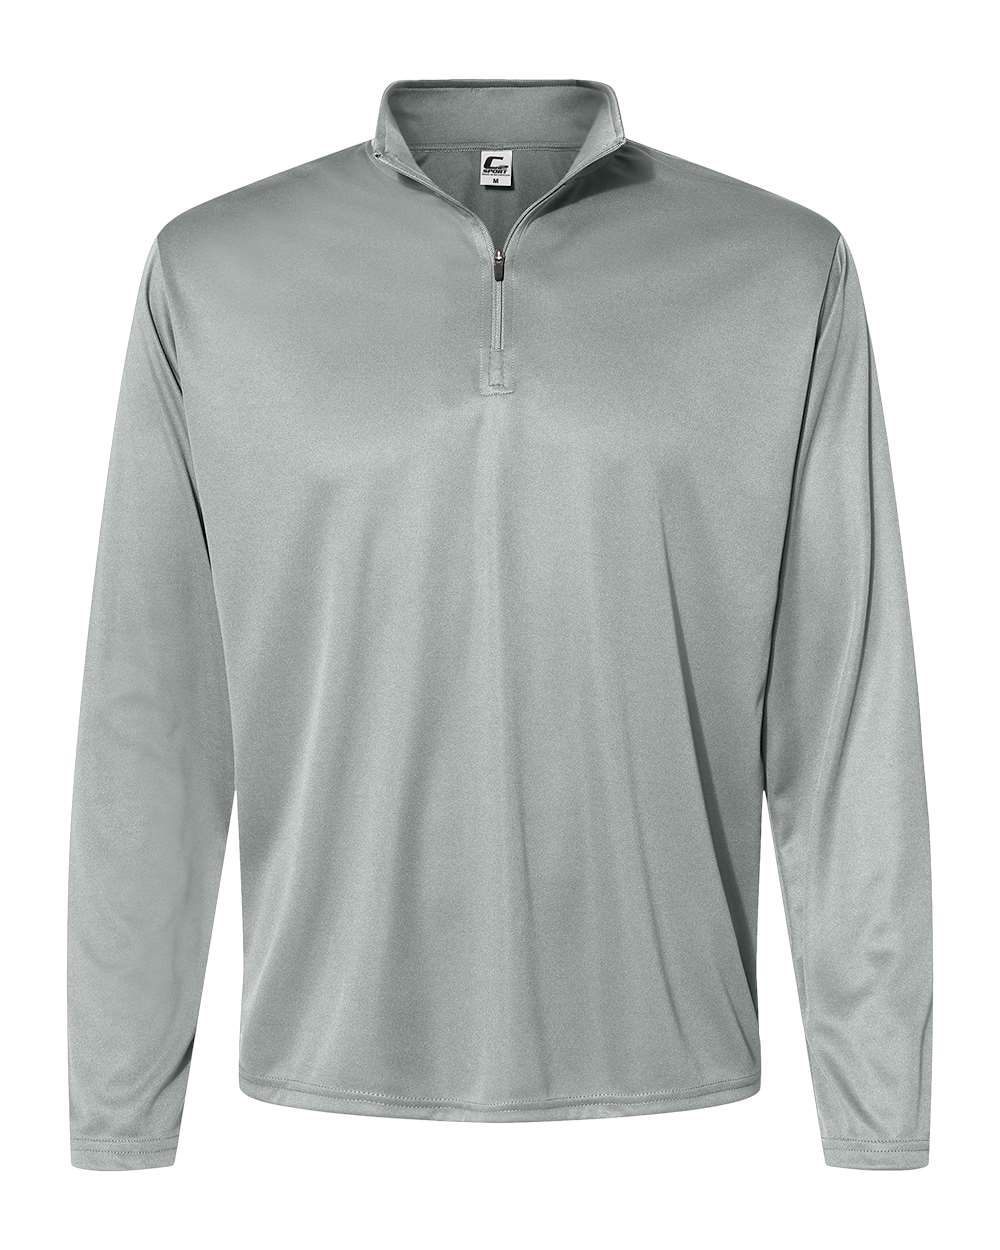 Men's Athletic 1/4-Zip Sweatshirt in Sizes XS-4XL 